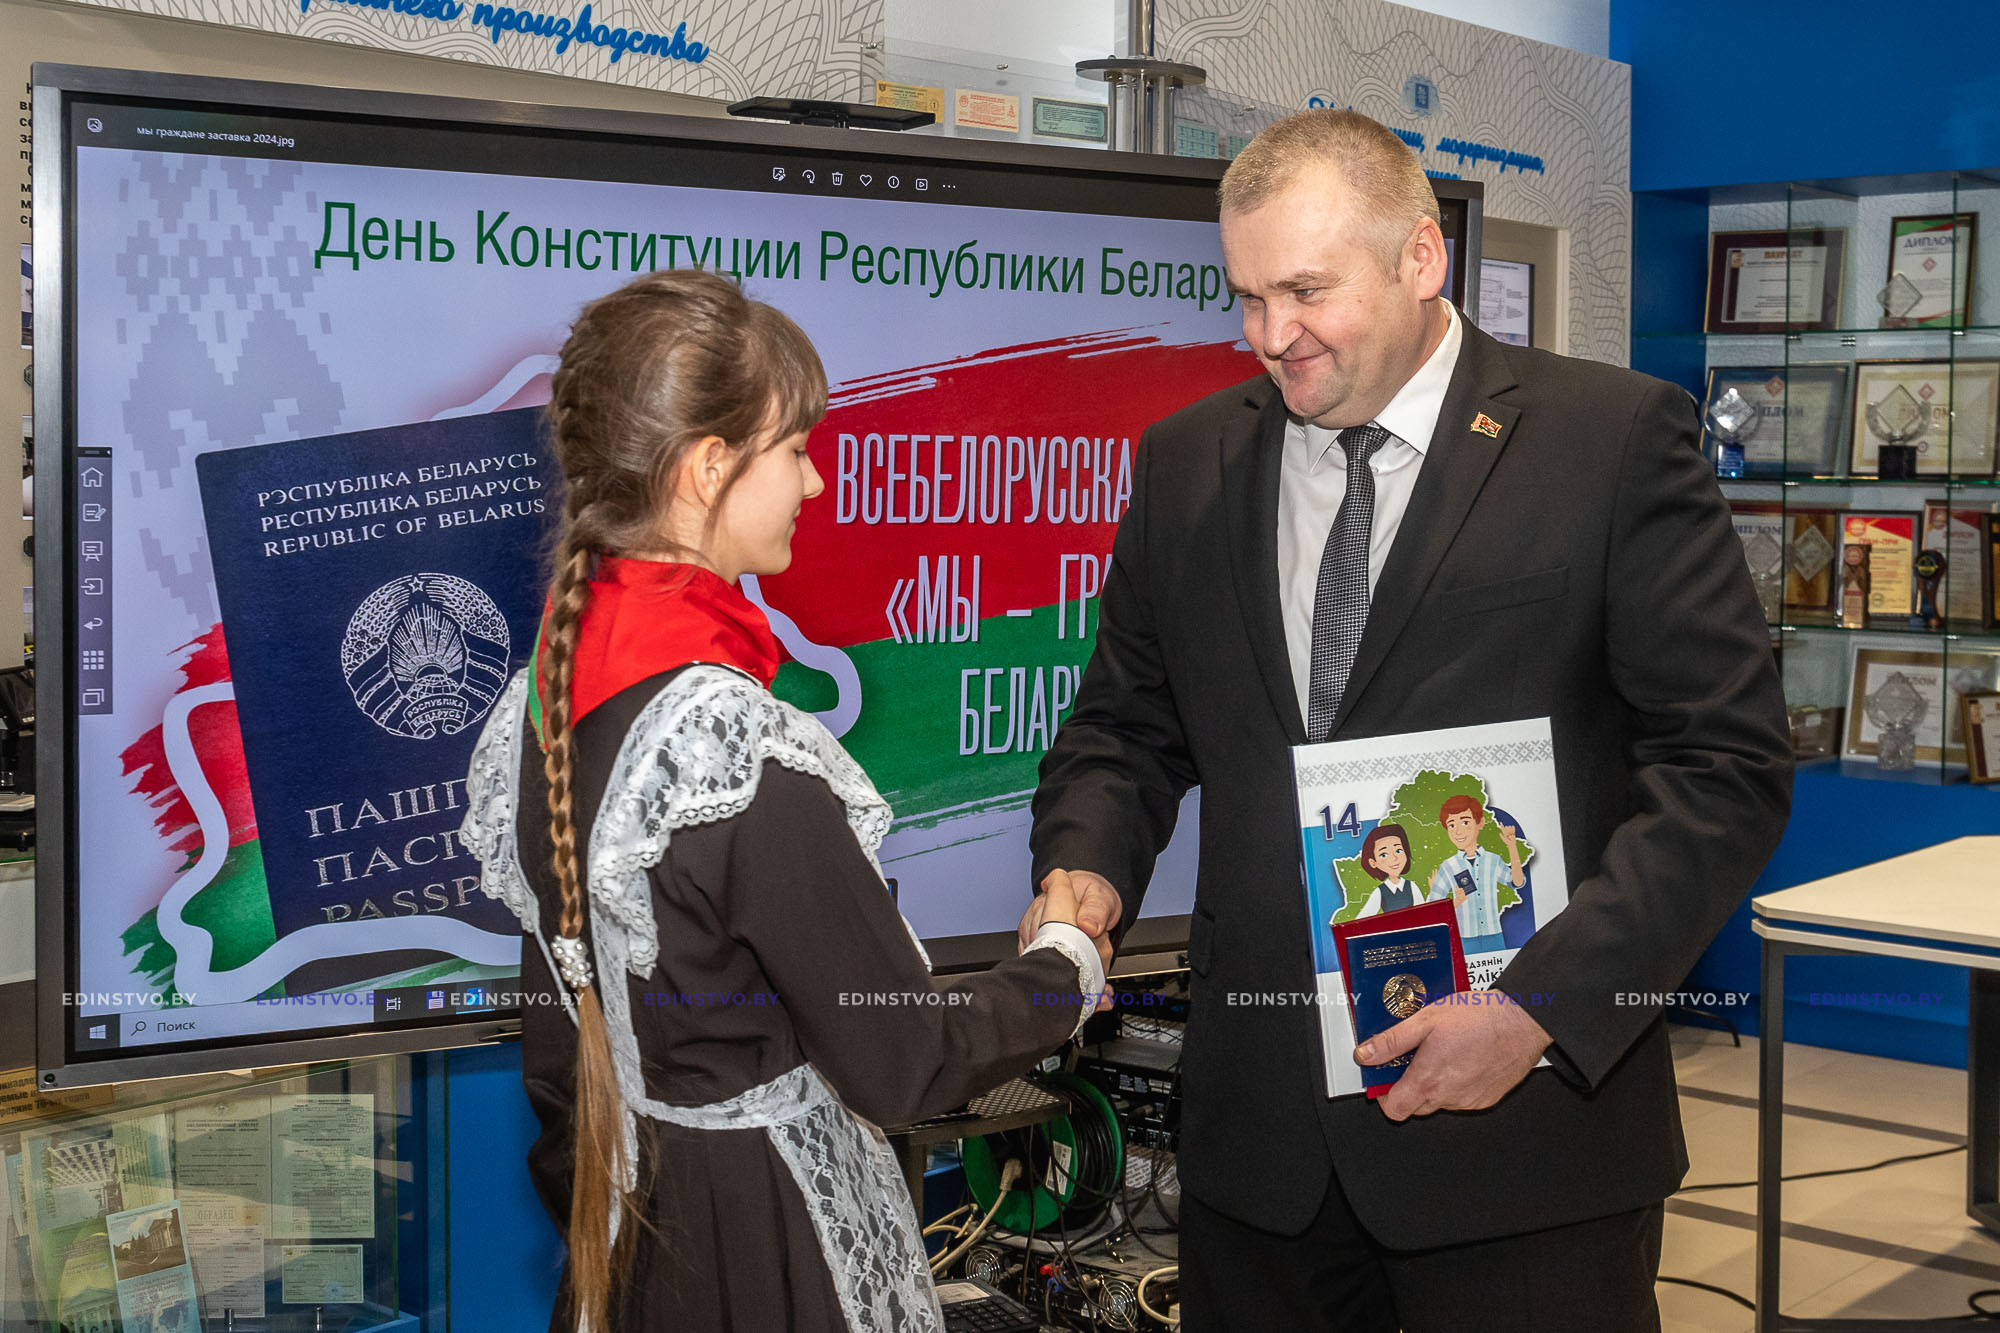 Более 20 школьников Борисовщины получили паспорта из рук председателя райисполкома в День Конституции Республики Беларусь